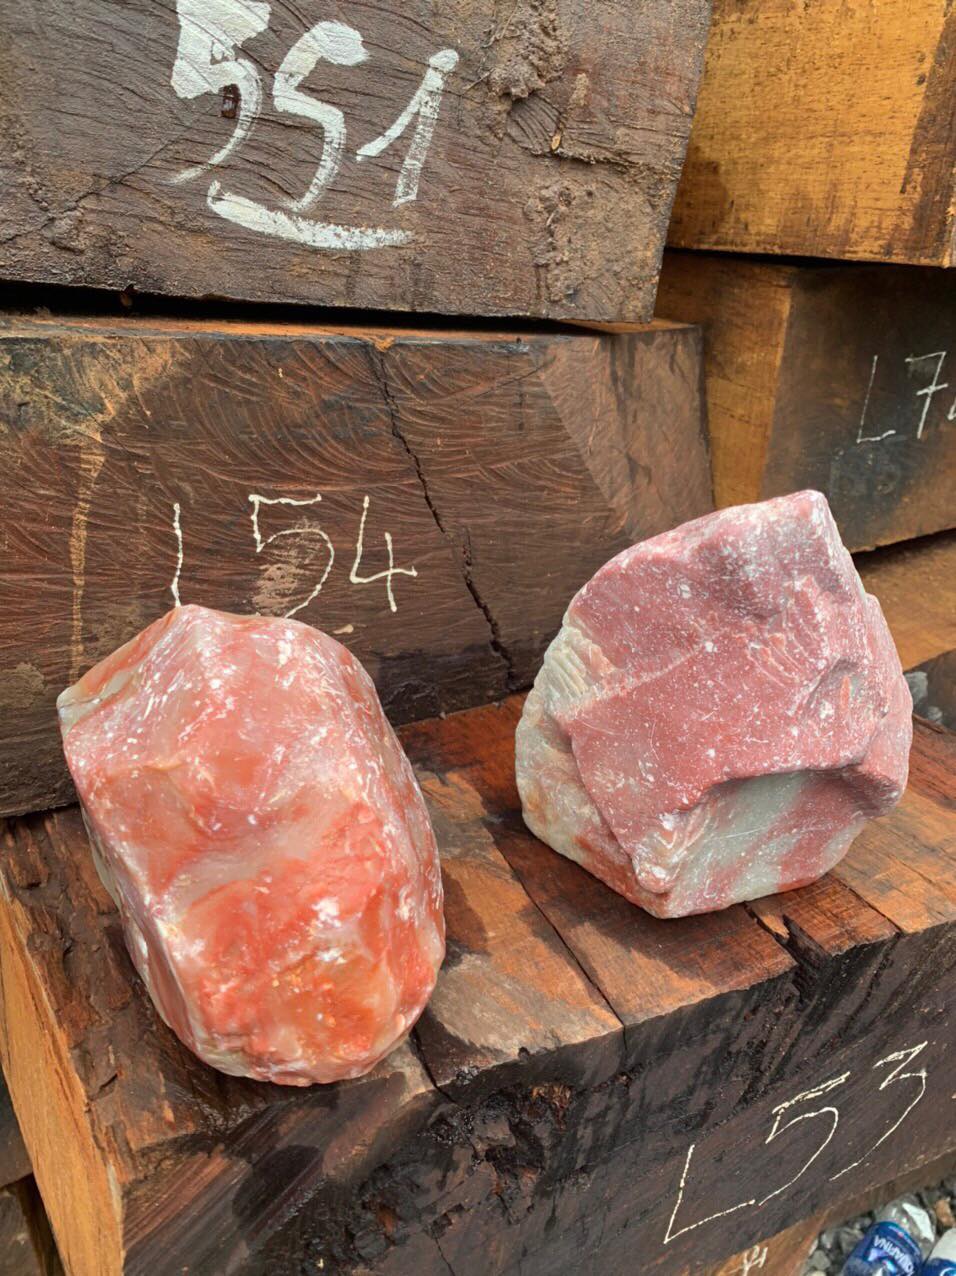 Lật tẩy bí mật trong 7 xe container chở gỗ, đá quý từ Lào  - Ảnh 2.